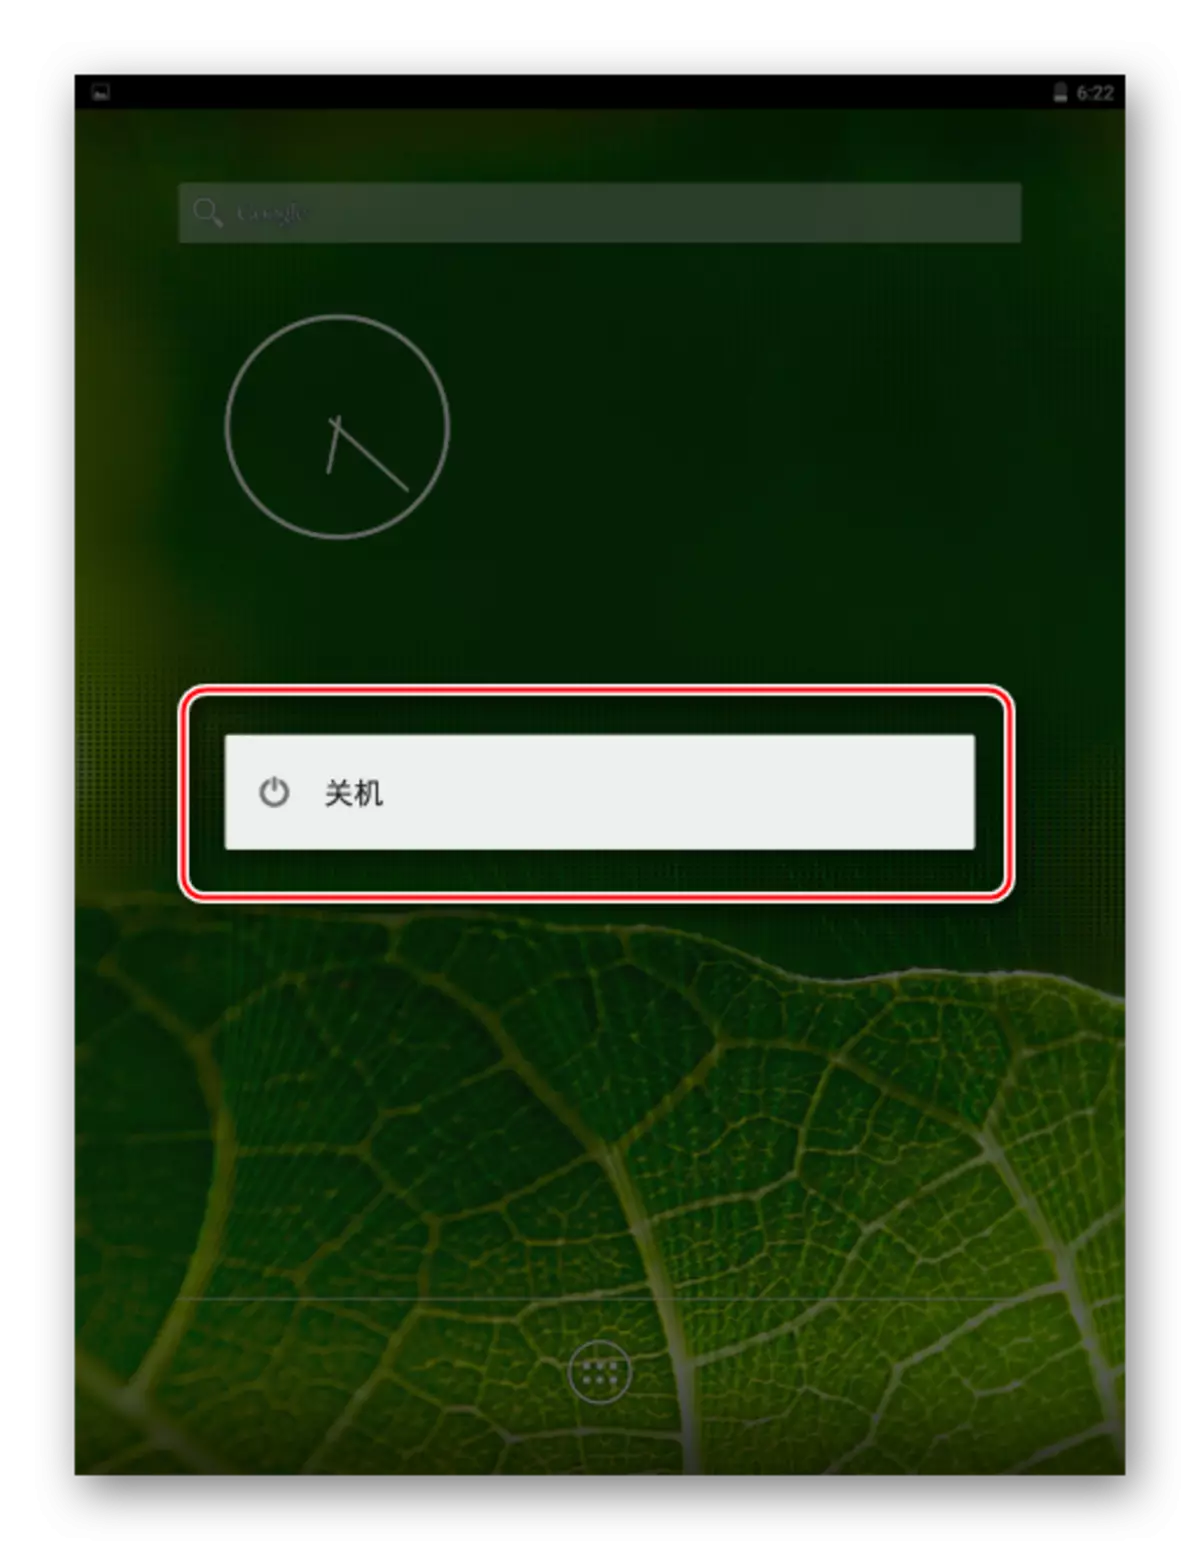 Xiaomi MIPAD 2 Apagando el dispositivo bajo el control de Android puro